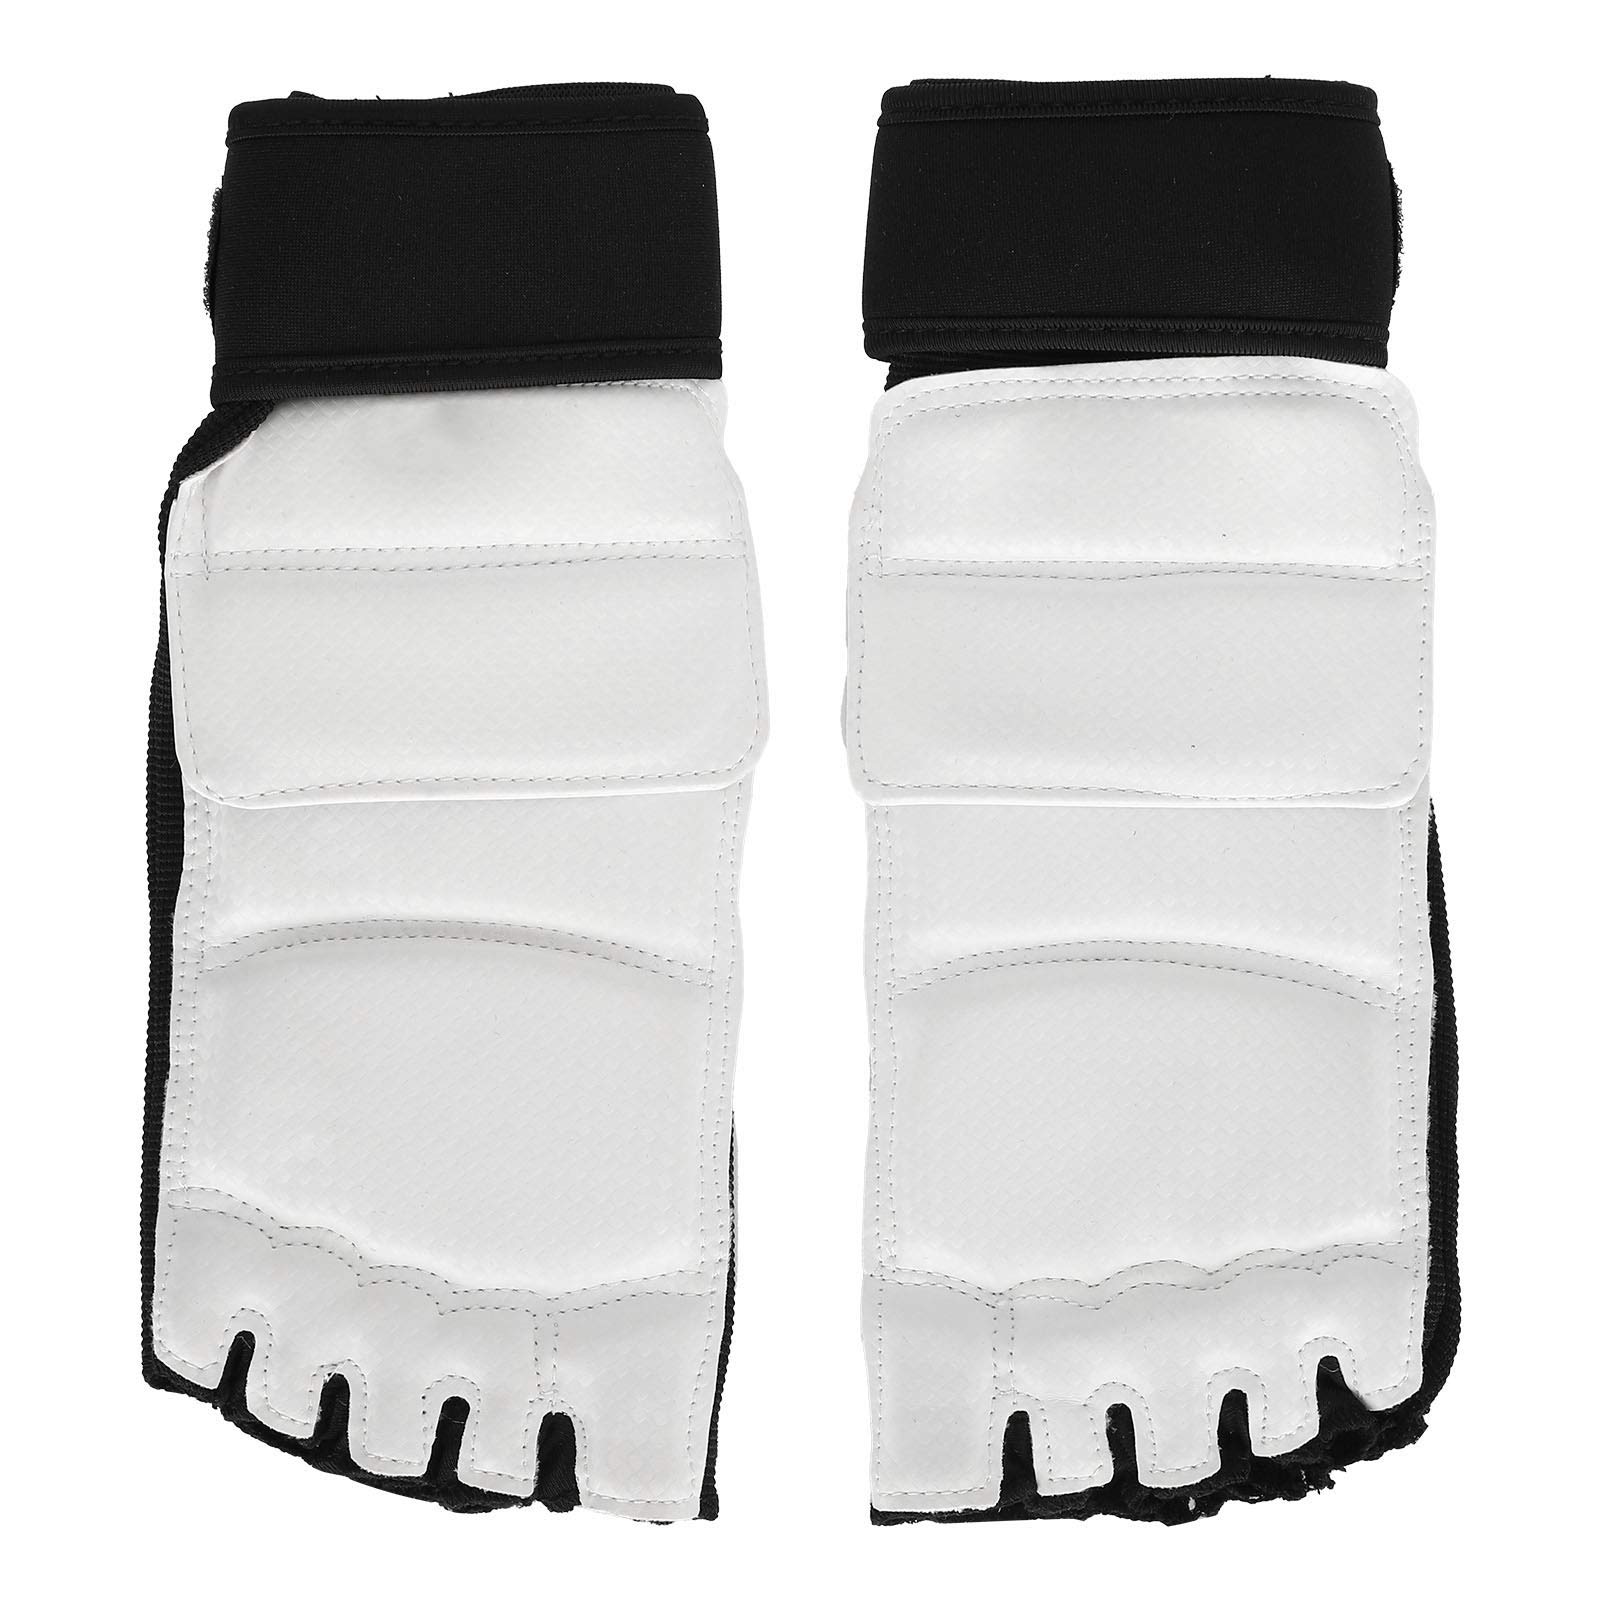 Vbest life Fußschutz, 2 Stück Taekwondo Fußschutz Boxschutz Knöchelstütze für das Kickbox-Training(S-Schwarz und weiß)